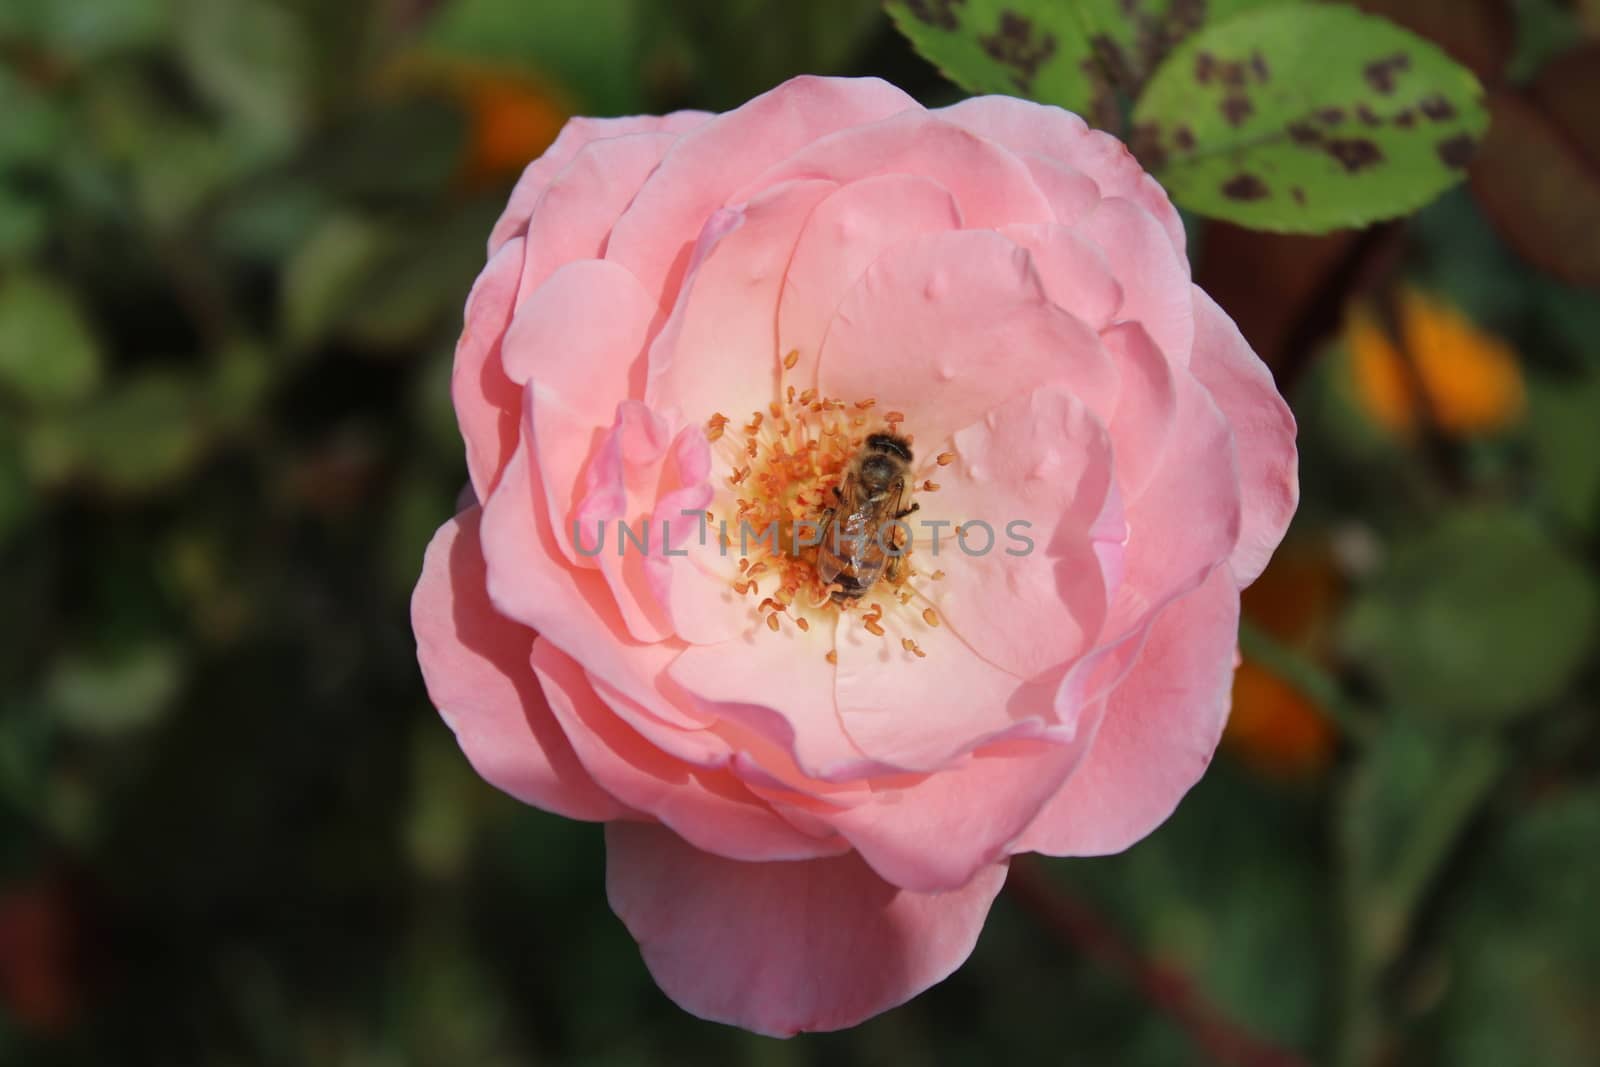 pink rose in the garden by martina_unbehauen